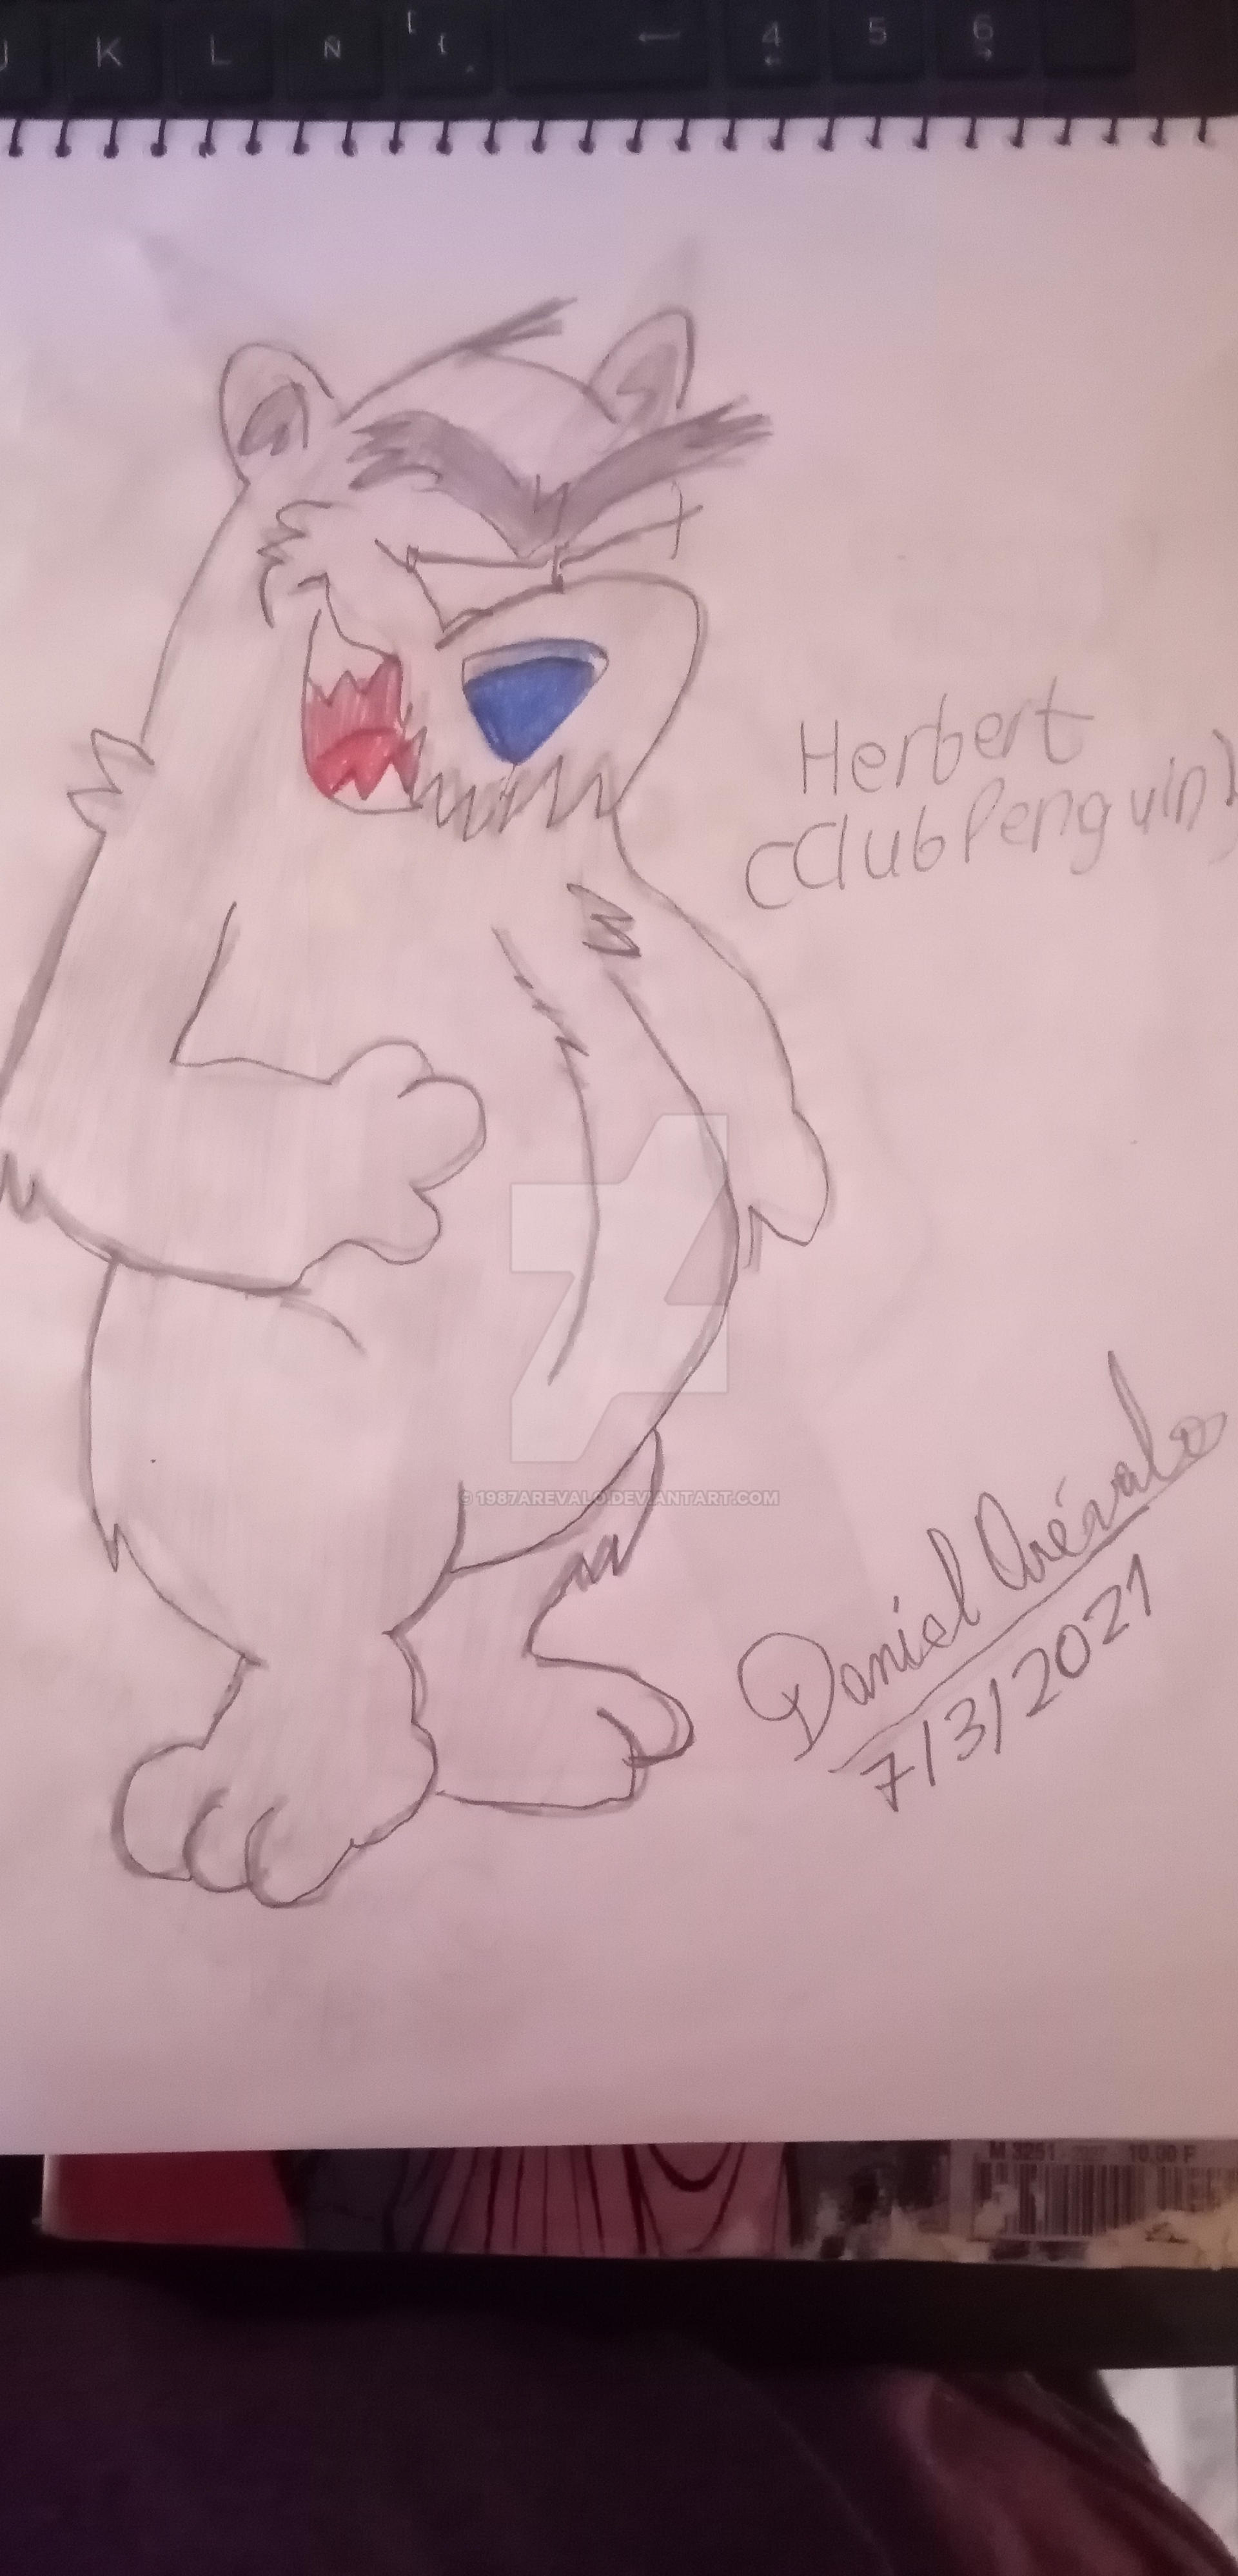 Herbert (Club Penguin) by 1987arevalo on DeviantArt